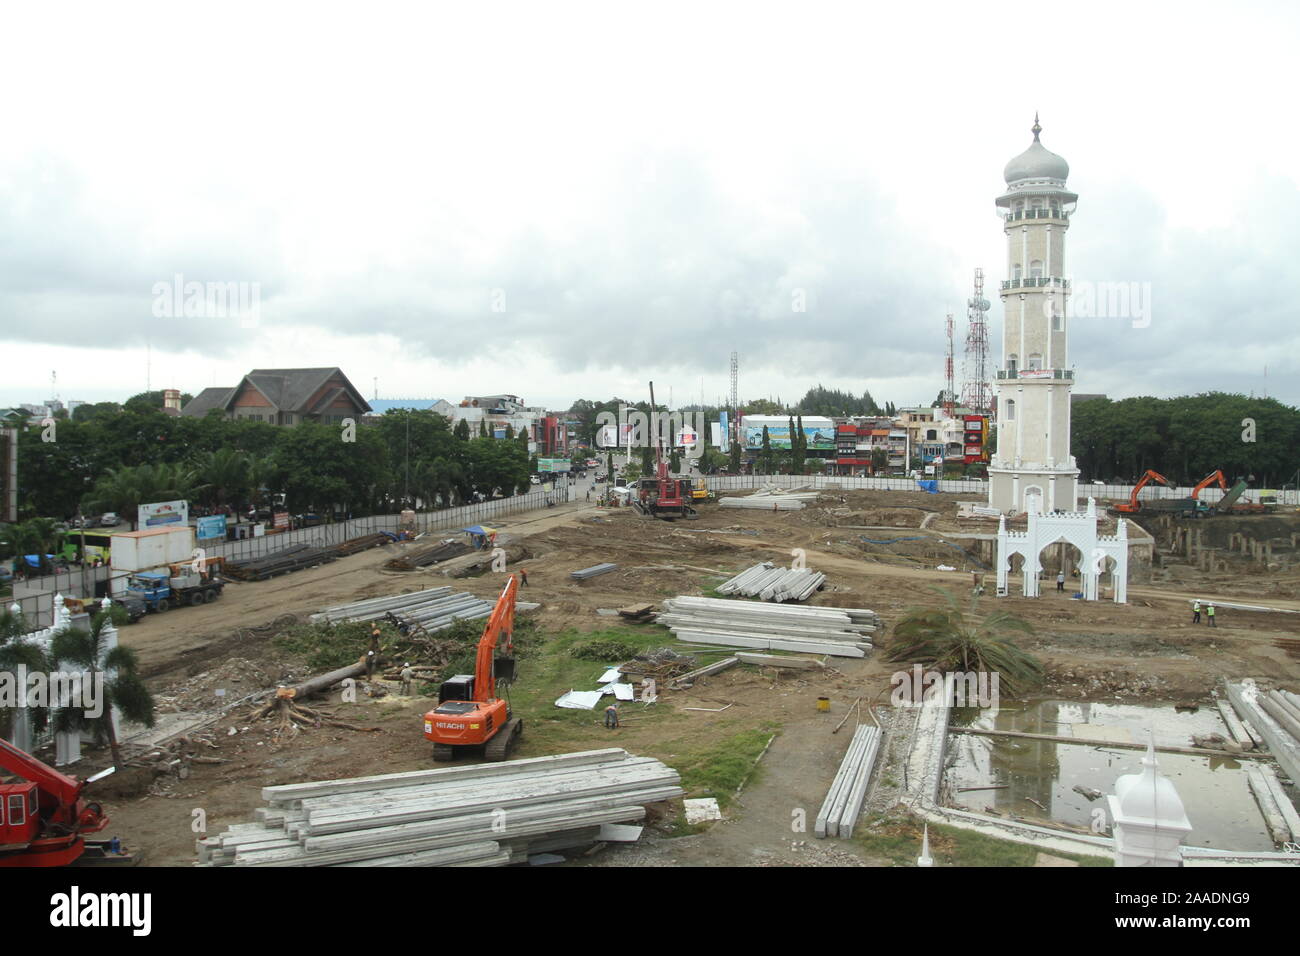 Phasen der Projektarbeit 12 Einheiten der elektrischen Regenschirme im Innenhof der Großen Moschee Baiturrahman, Banda Aceh, Sumatra, Indonesien zu bauen Stockfoto